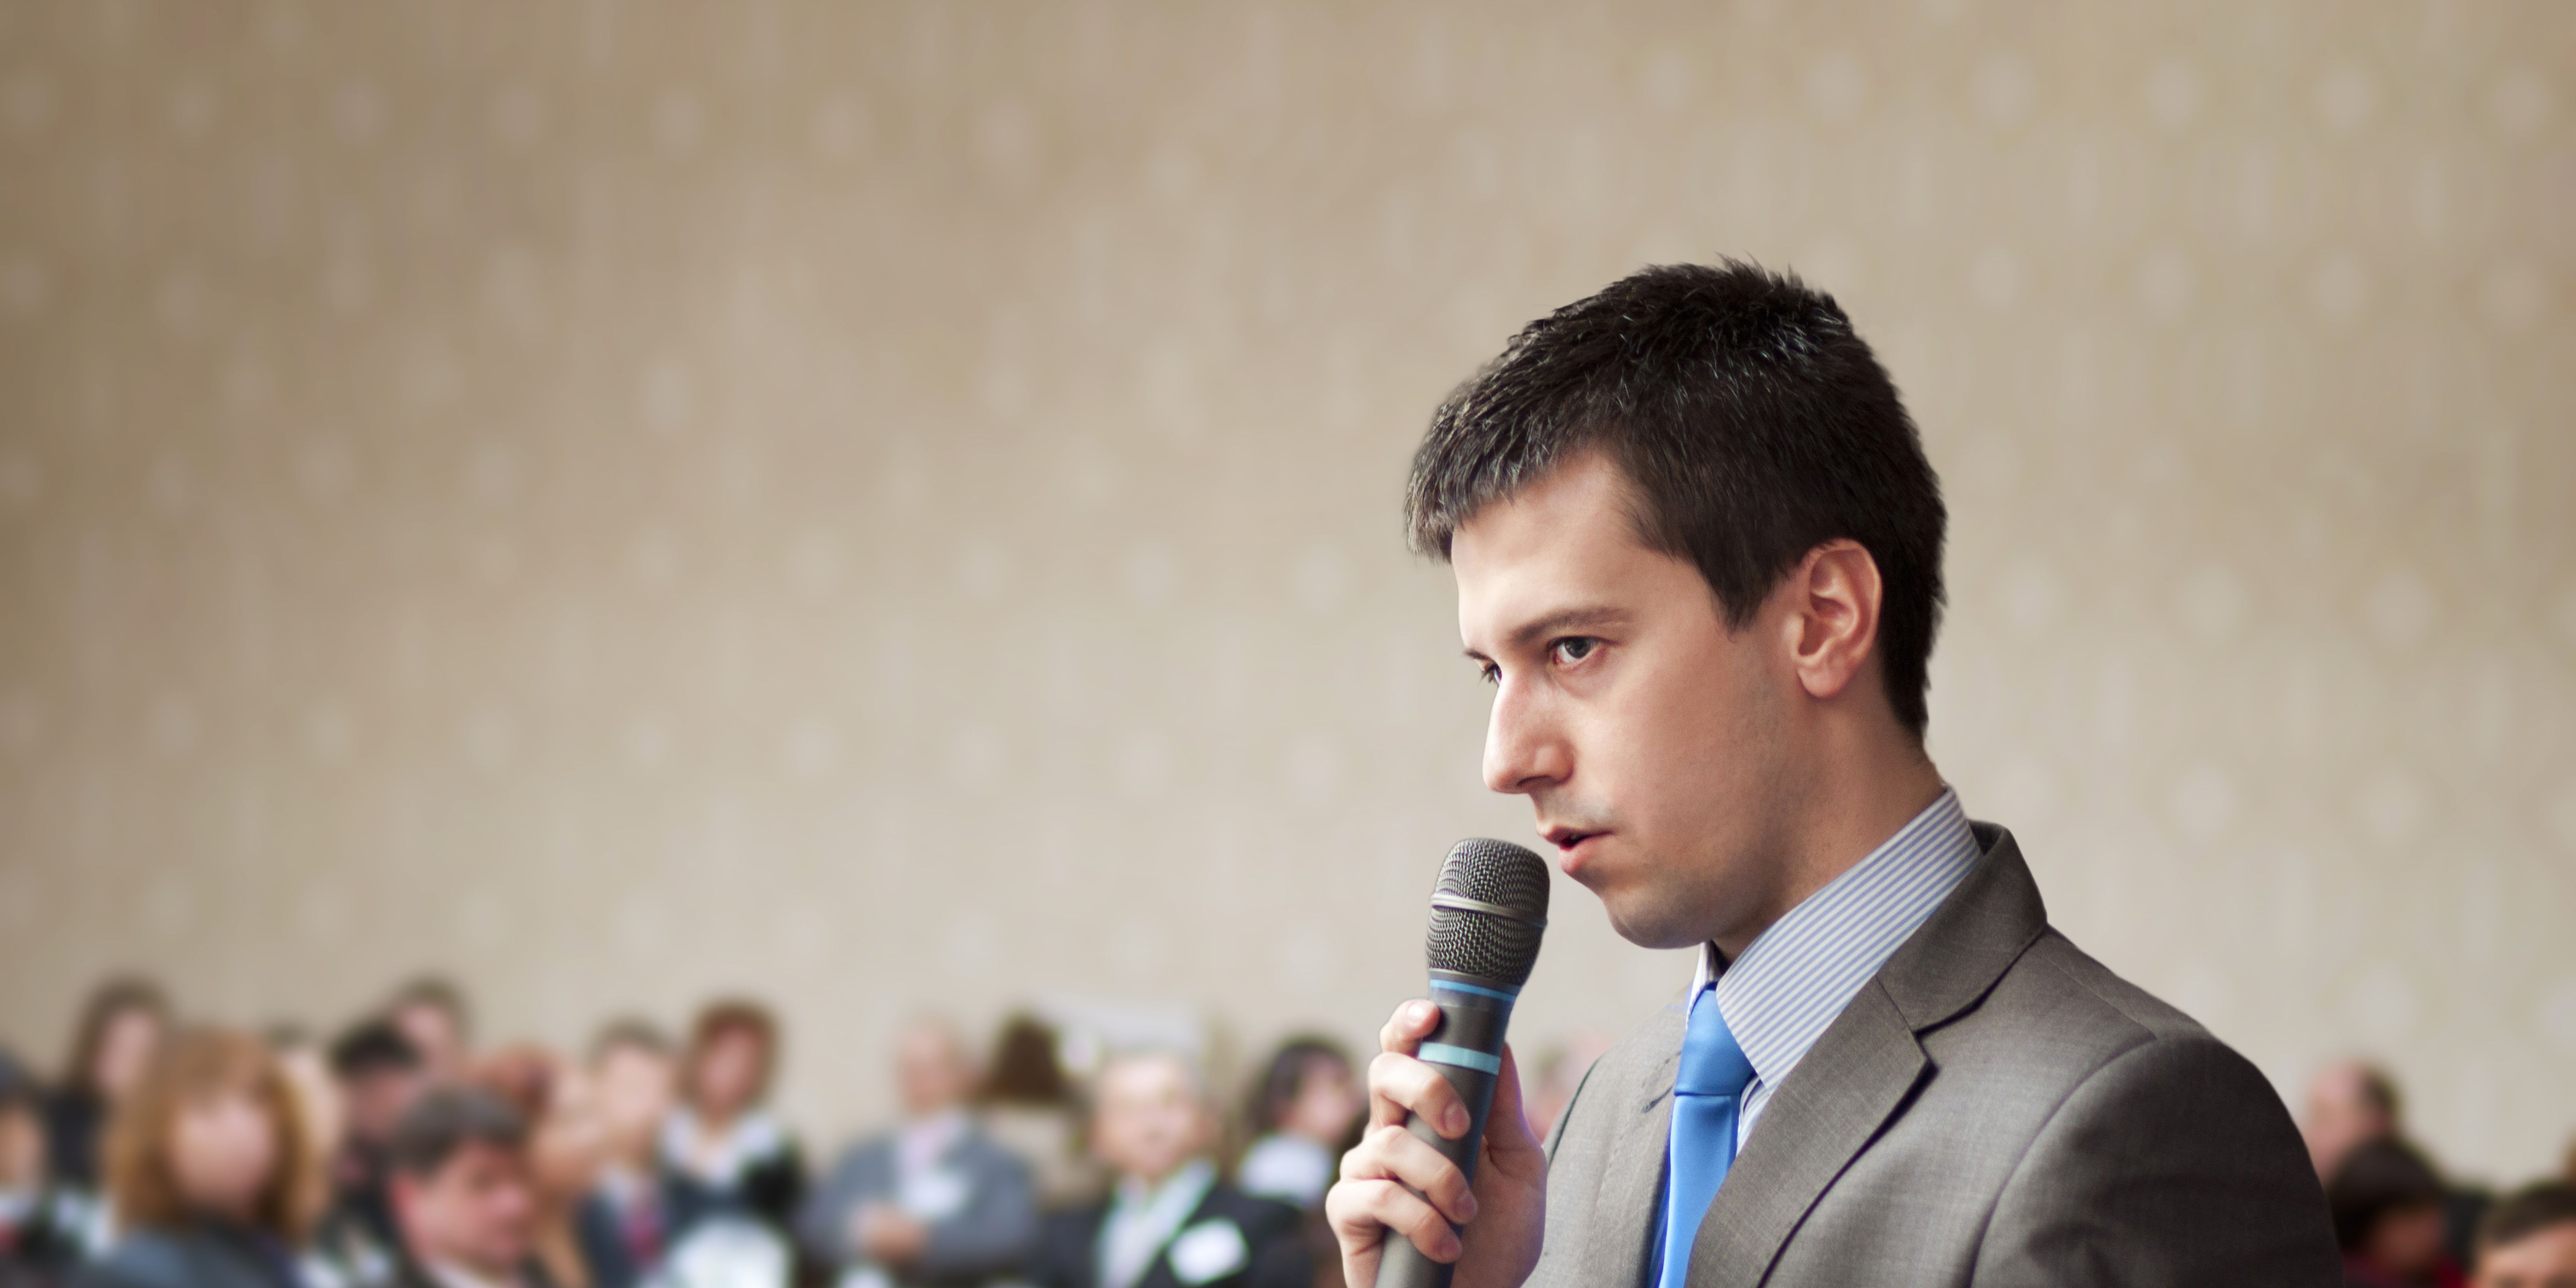 kesalahan dalam public speaking